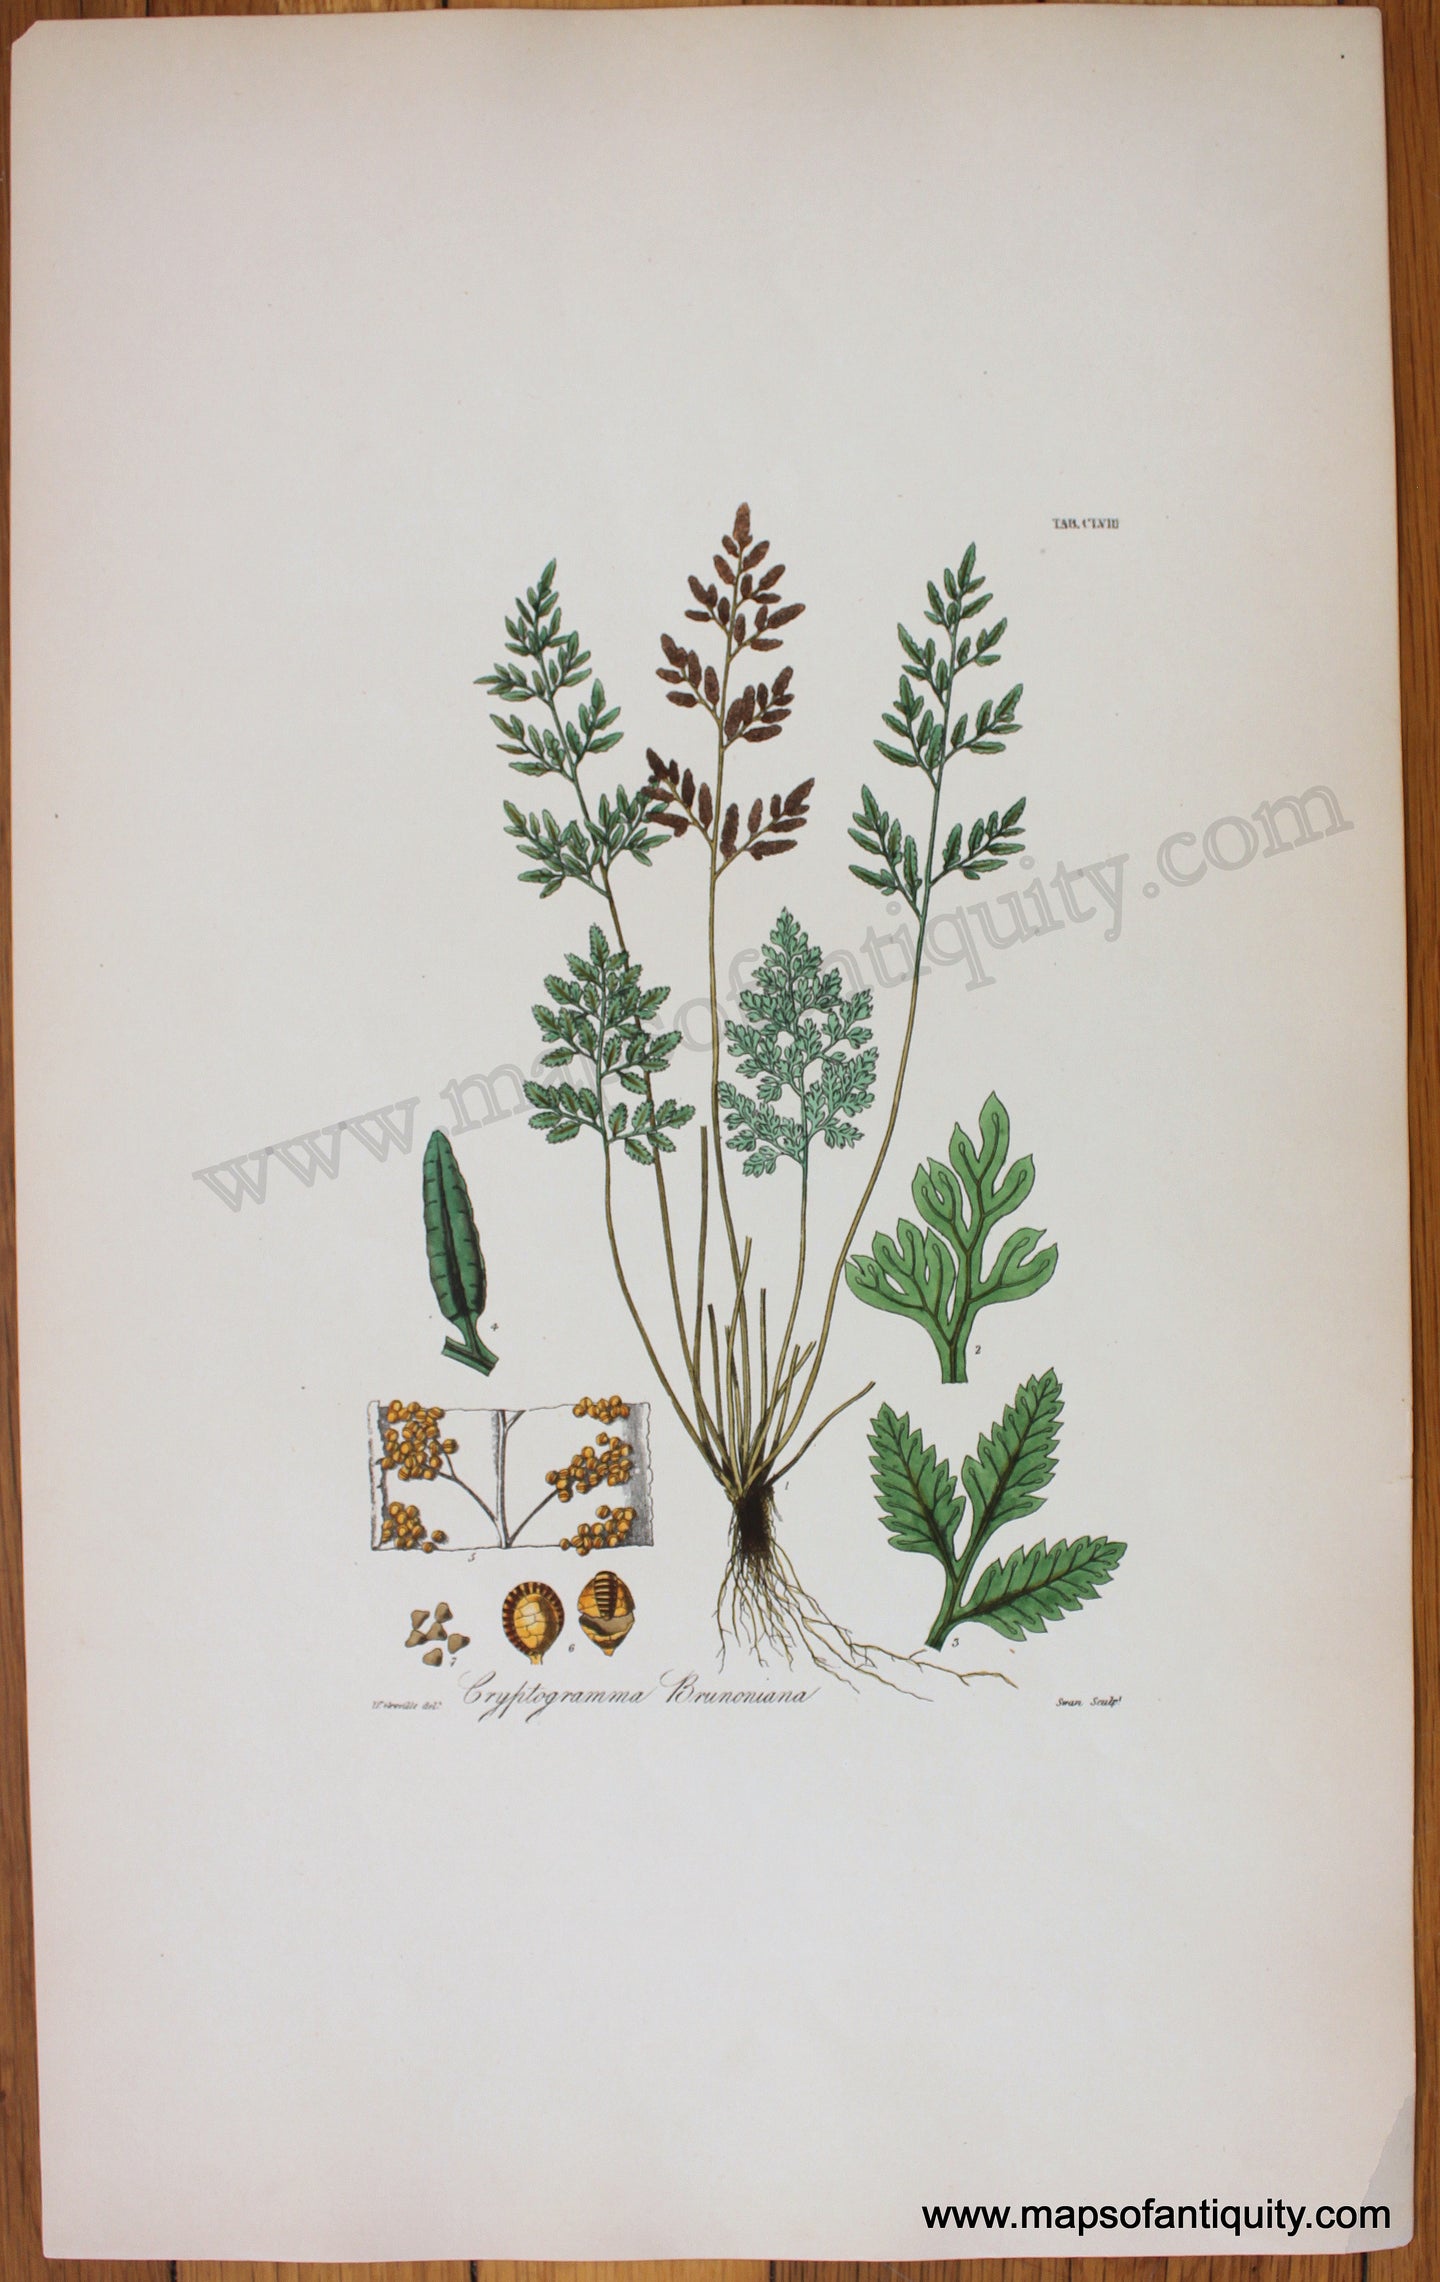 Antique-Botanical-Print-Cryptogramma-Brunoniana-1831-Hooker-Botanical--1800s-19th-century-Maps-of-Antiquity